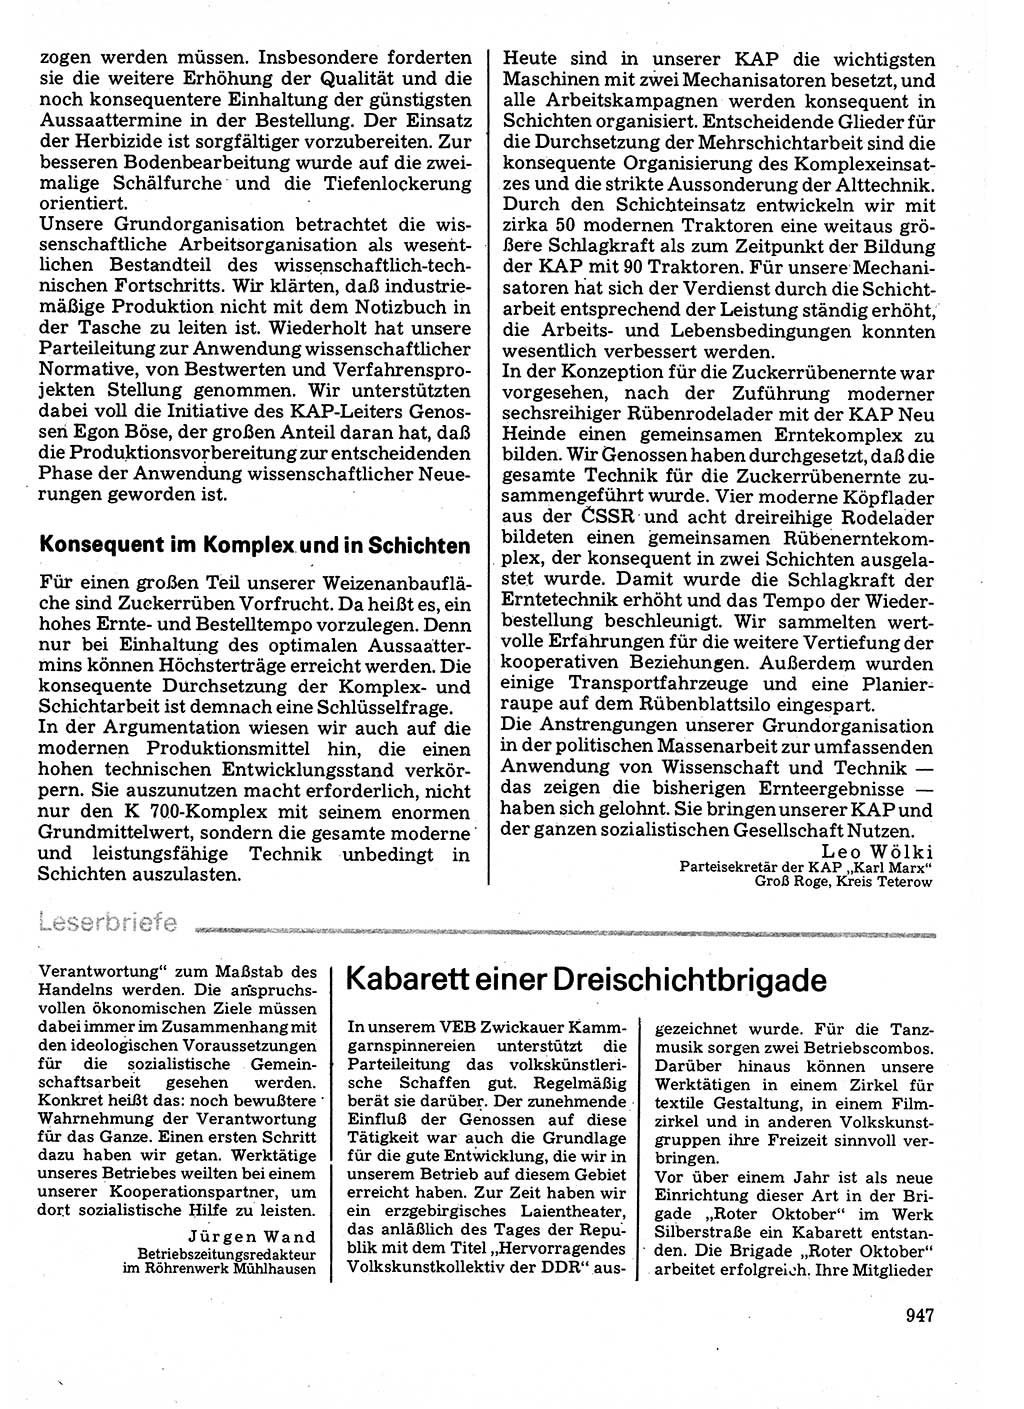 Neuer Weg (NW), Organ des Zentralkomitees (ZK) der SED (Sozialistische Einheitspartei Deutschlands) für Fragen des Parteilebens, 32. Jahrgang [Deutsche Demokratische Republik (DDR)] 1977, Seite 947 (NW ZK SED DDR 1977, S. 947)